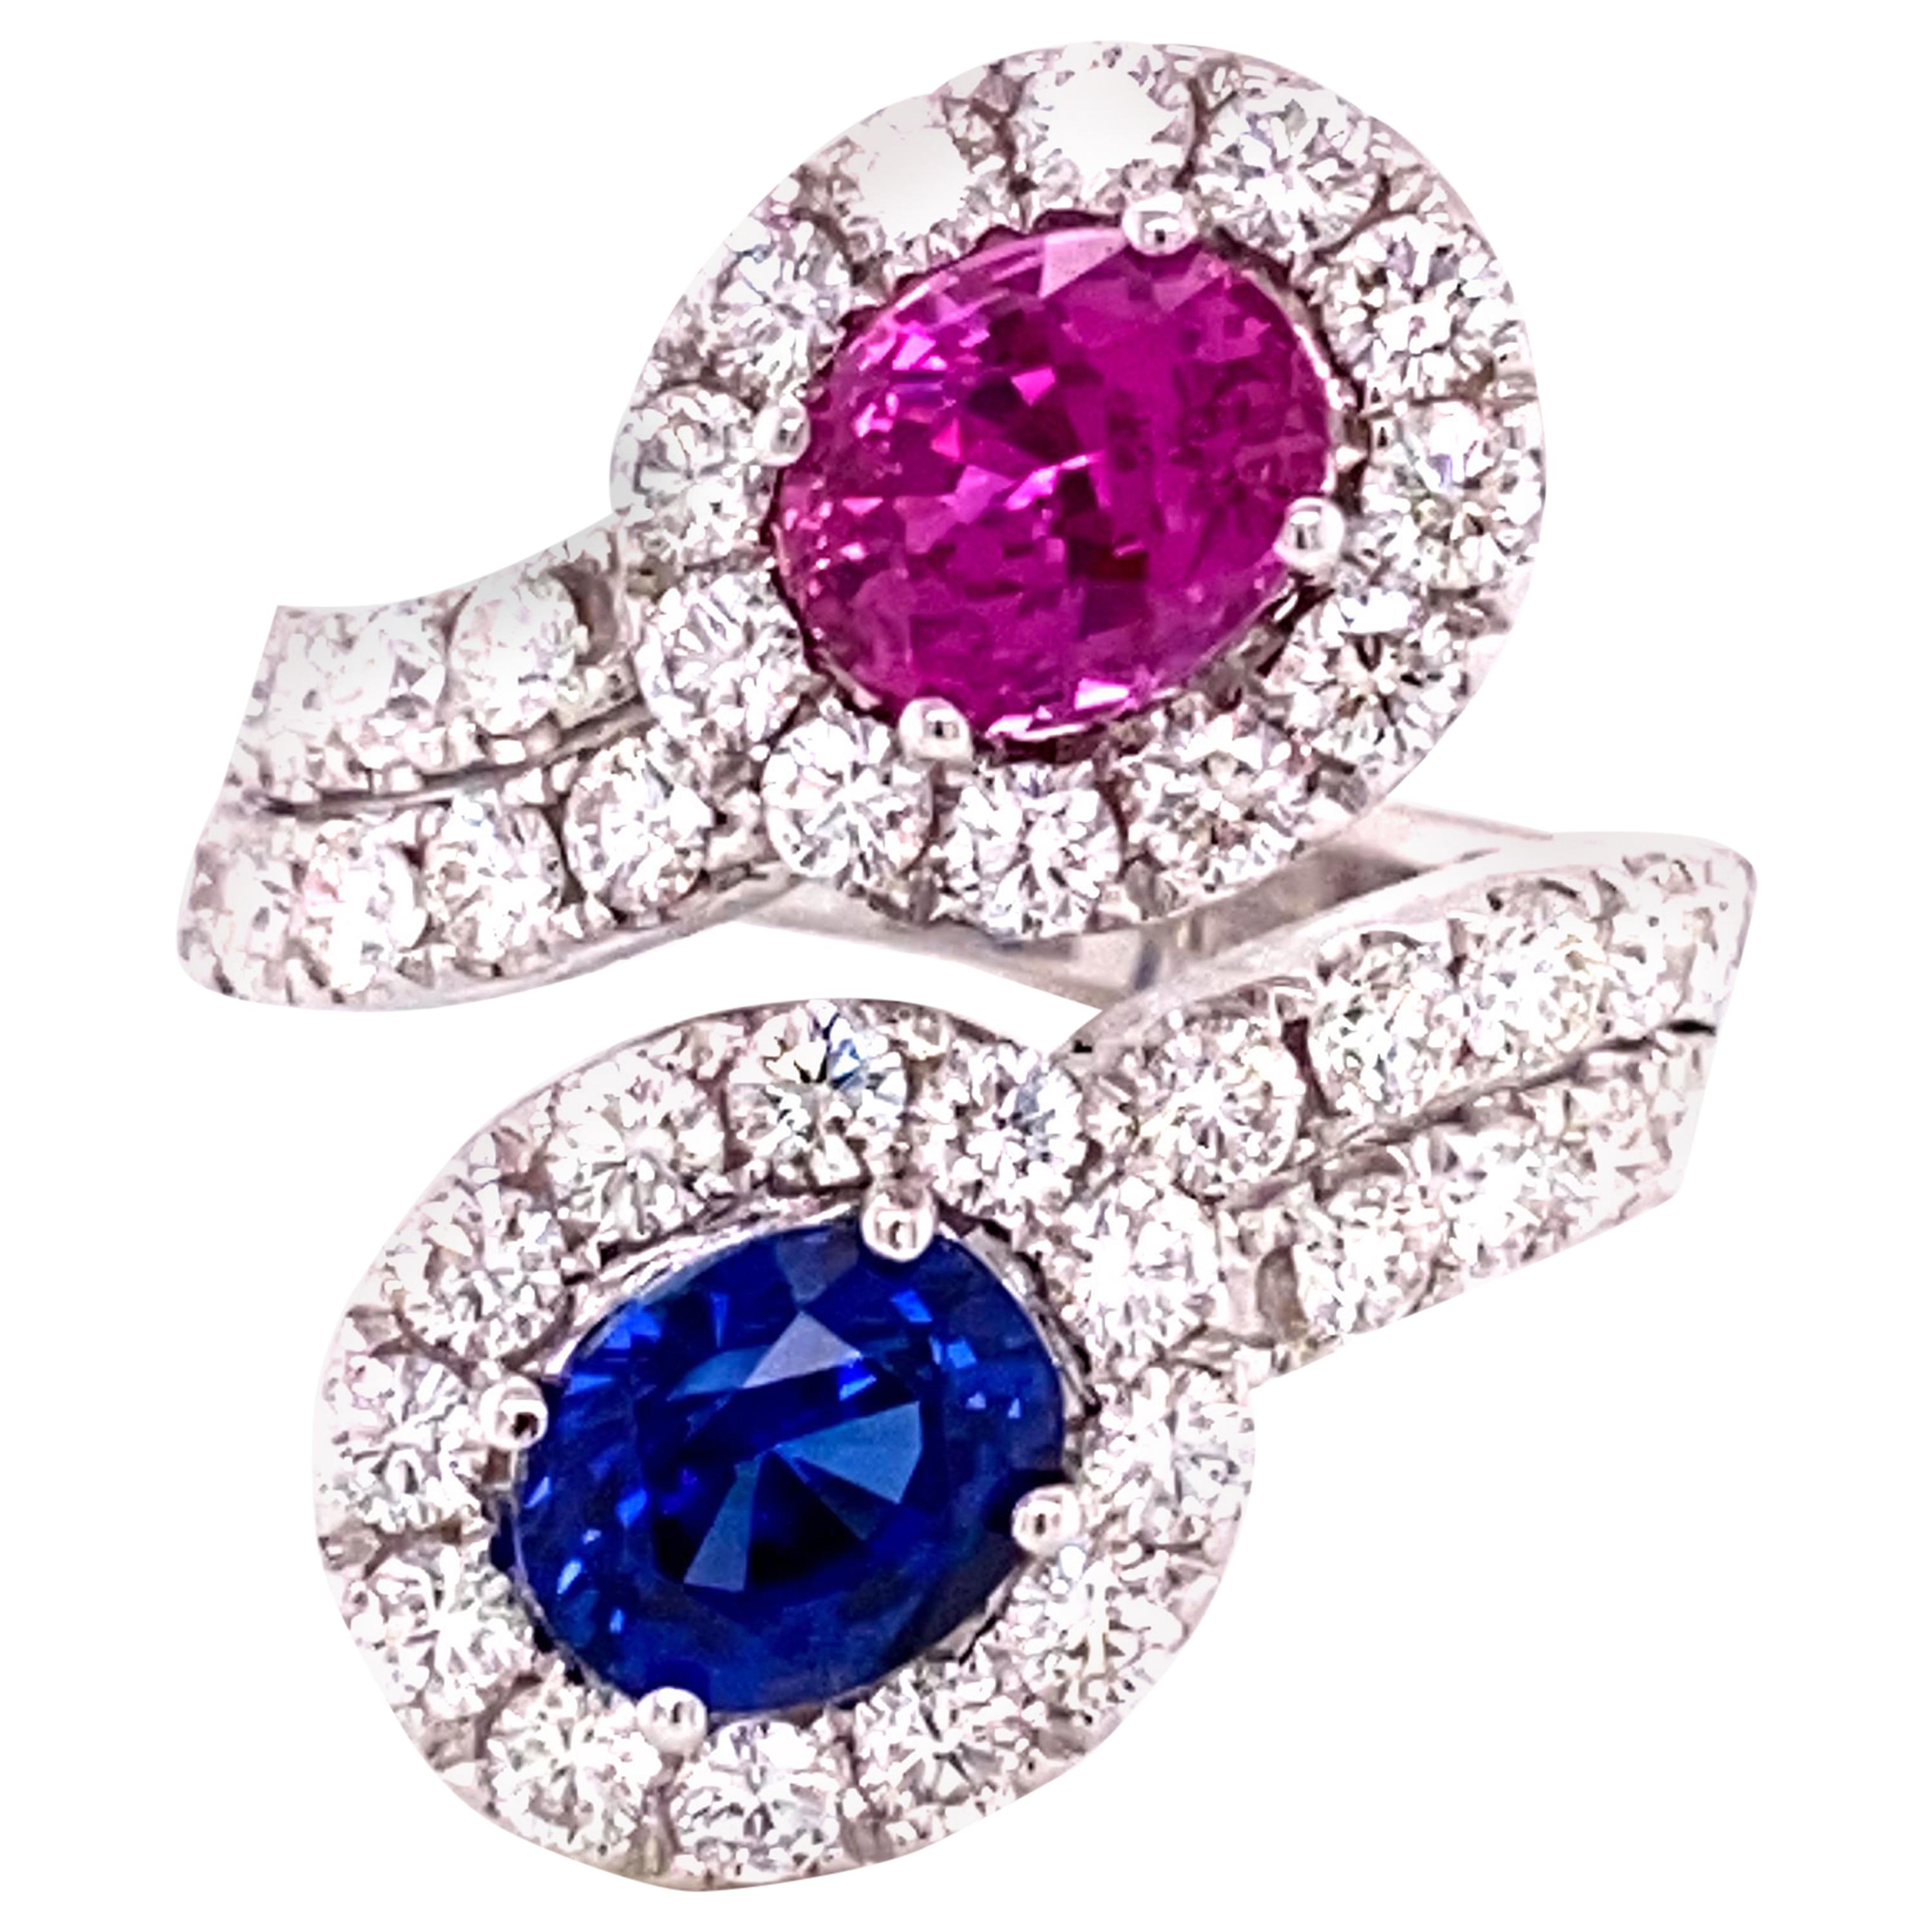 Bague en saphir bleu certifié GRS de 1,59 carat et diamants roses de 1,54 carat